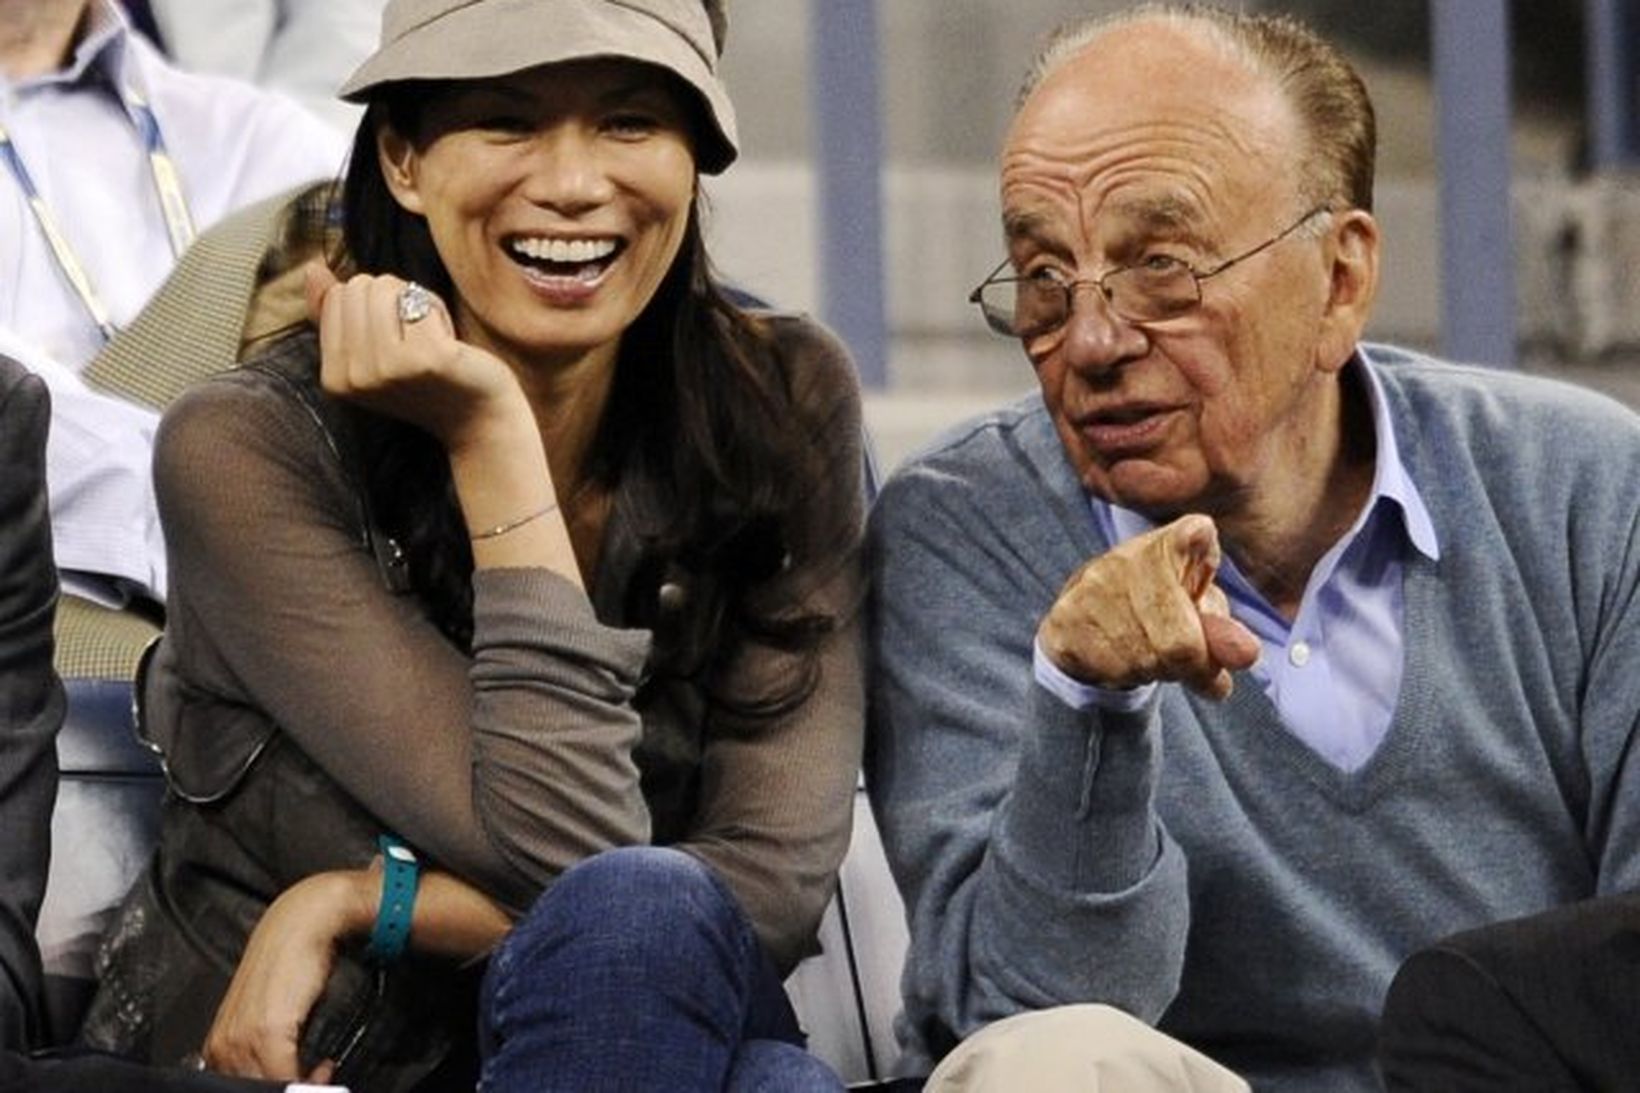 Rupert Murdoch ásamt eiginkonu sinni Wendi Deng.